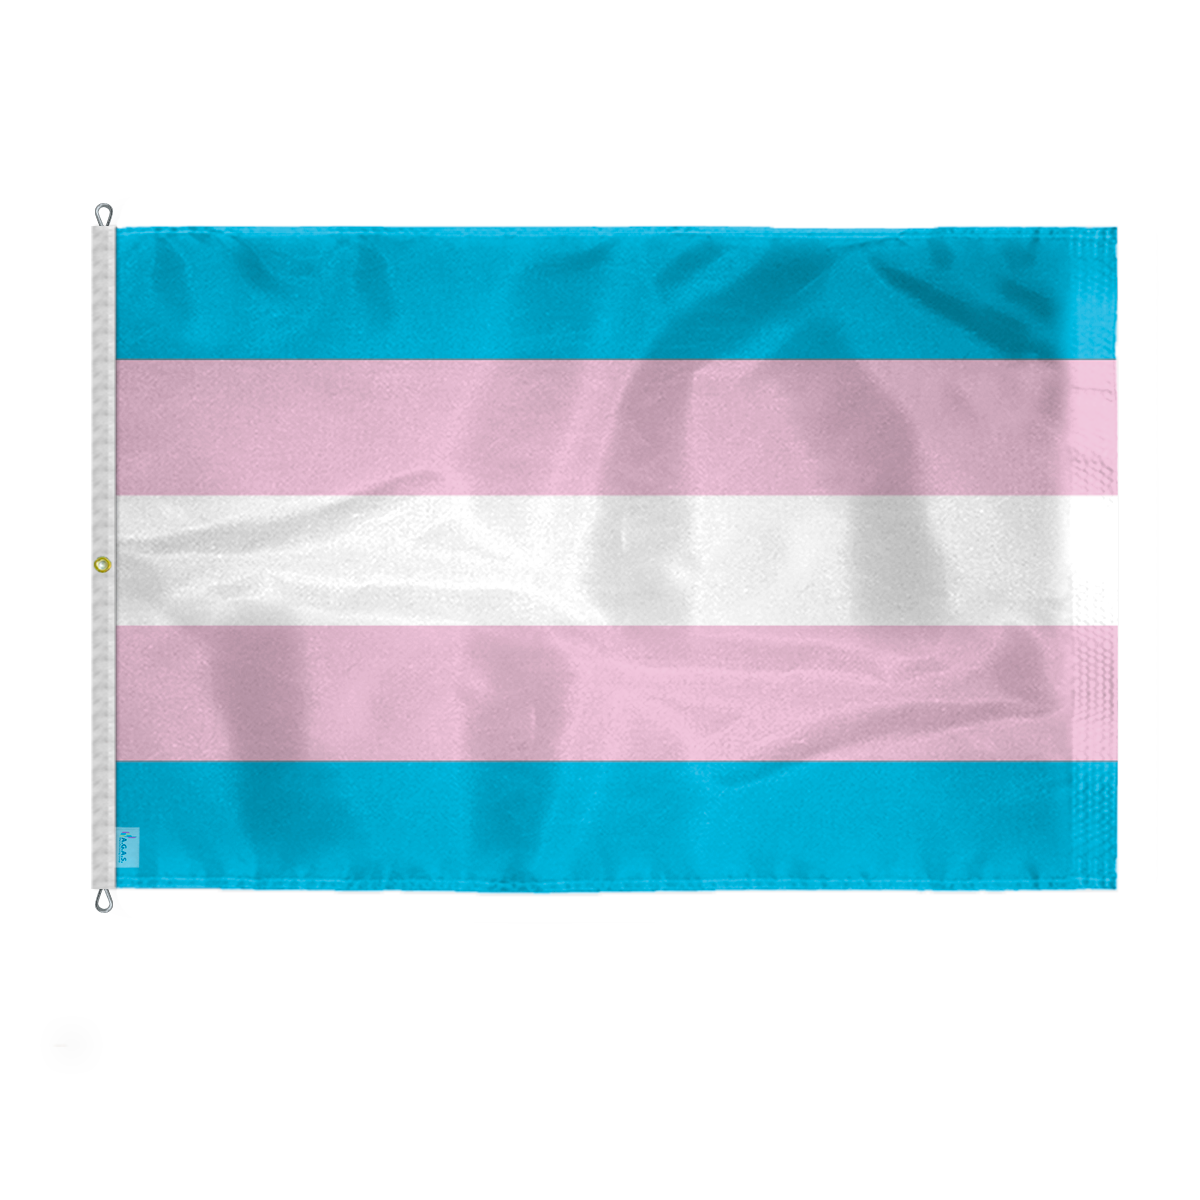 AGAS Large Transgender Trans Pride Flag 8x12 Ft